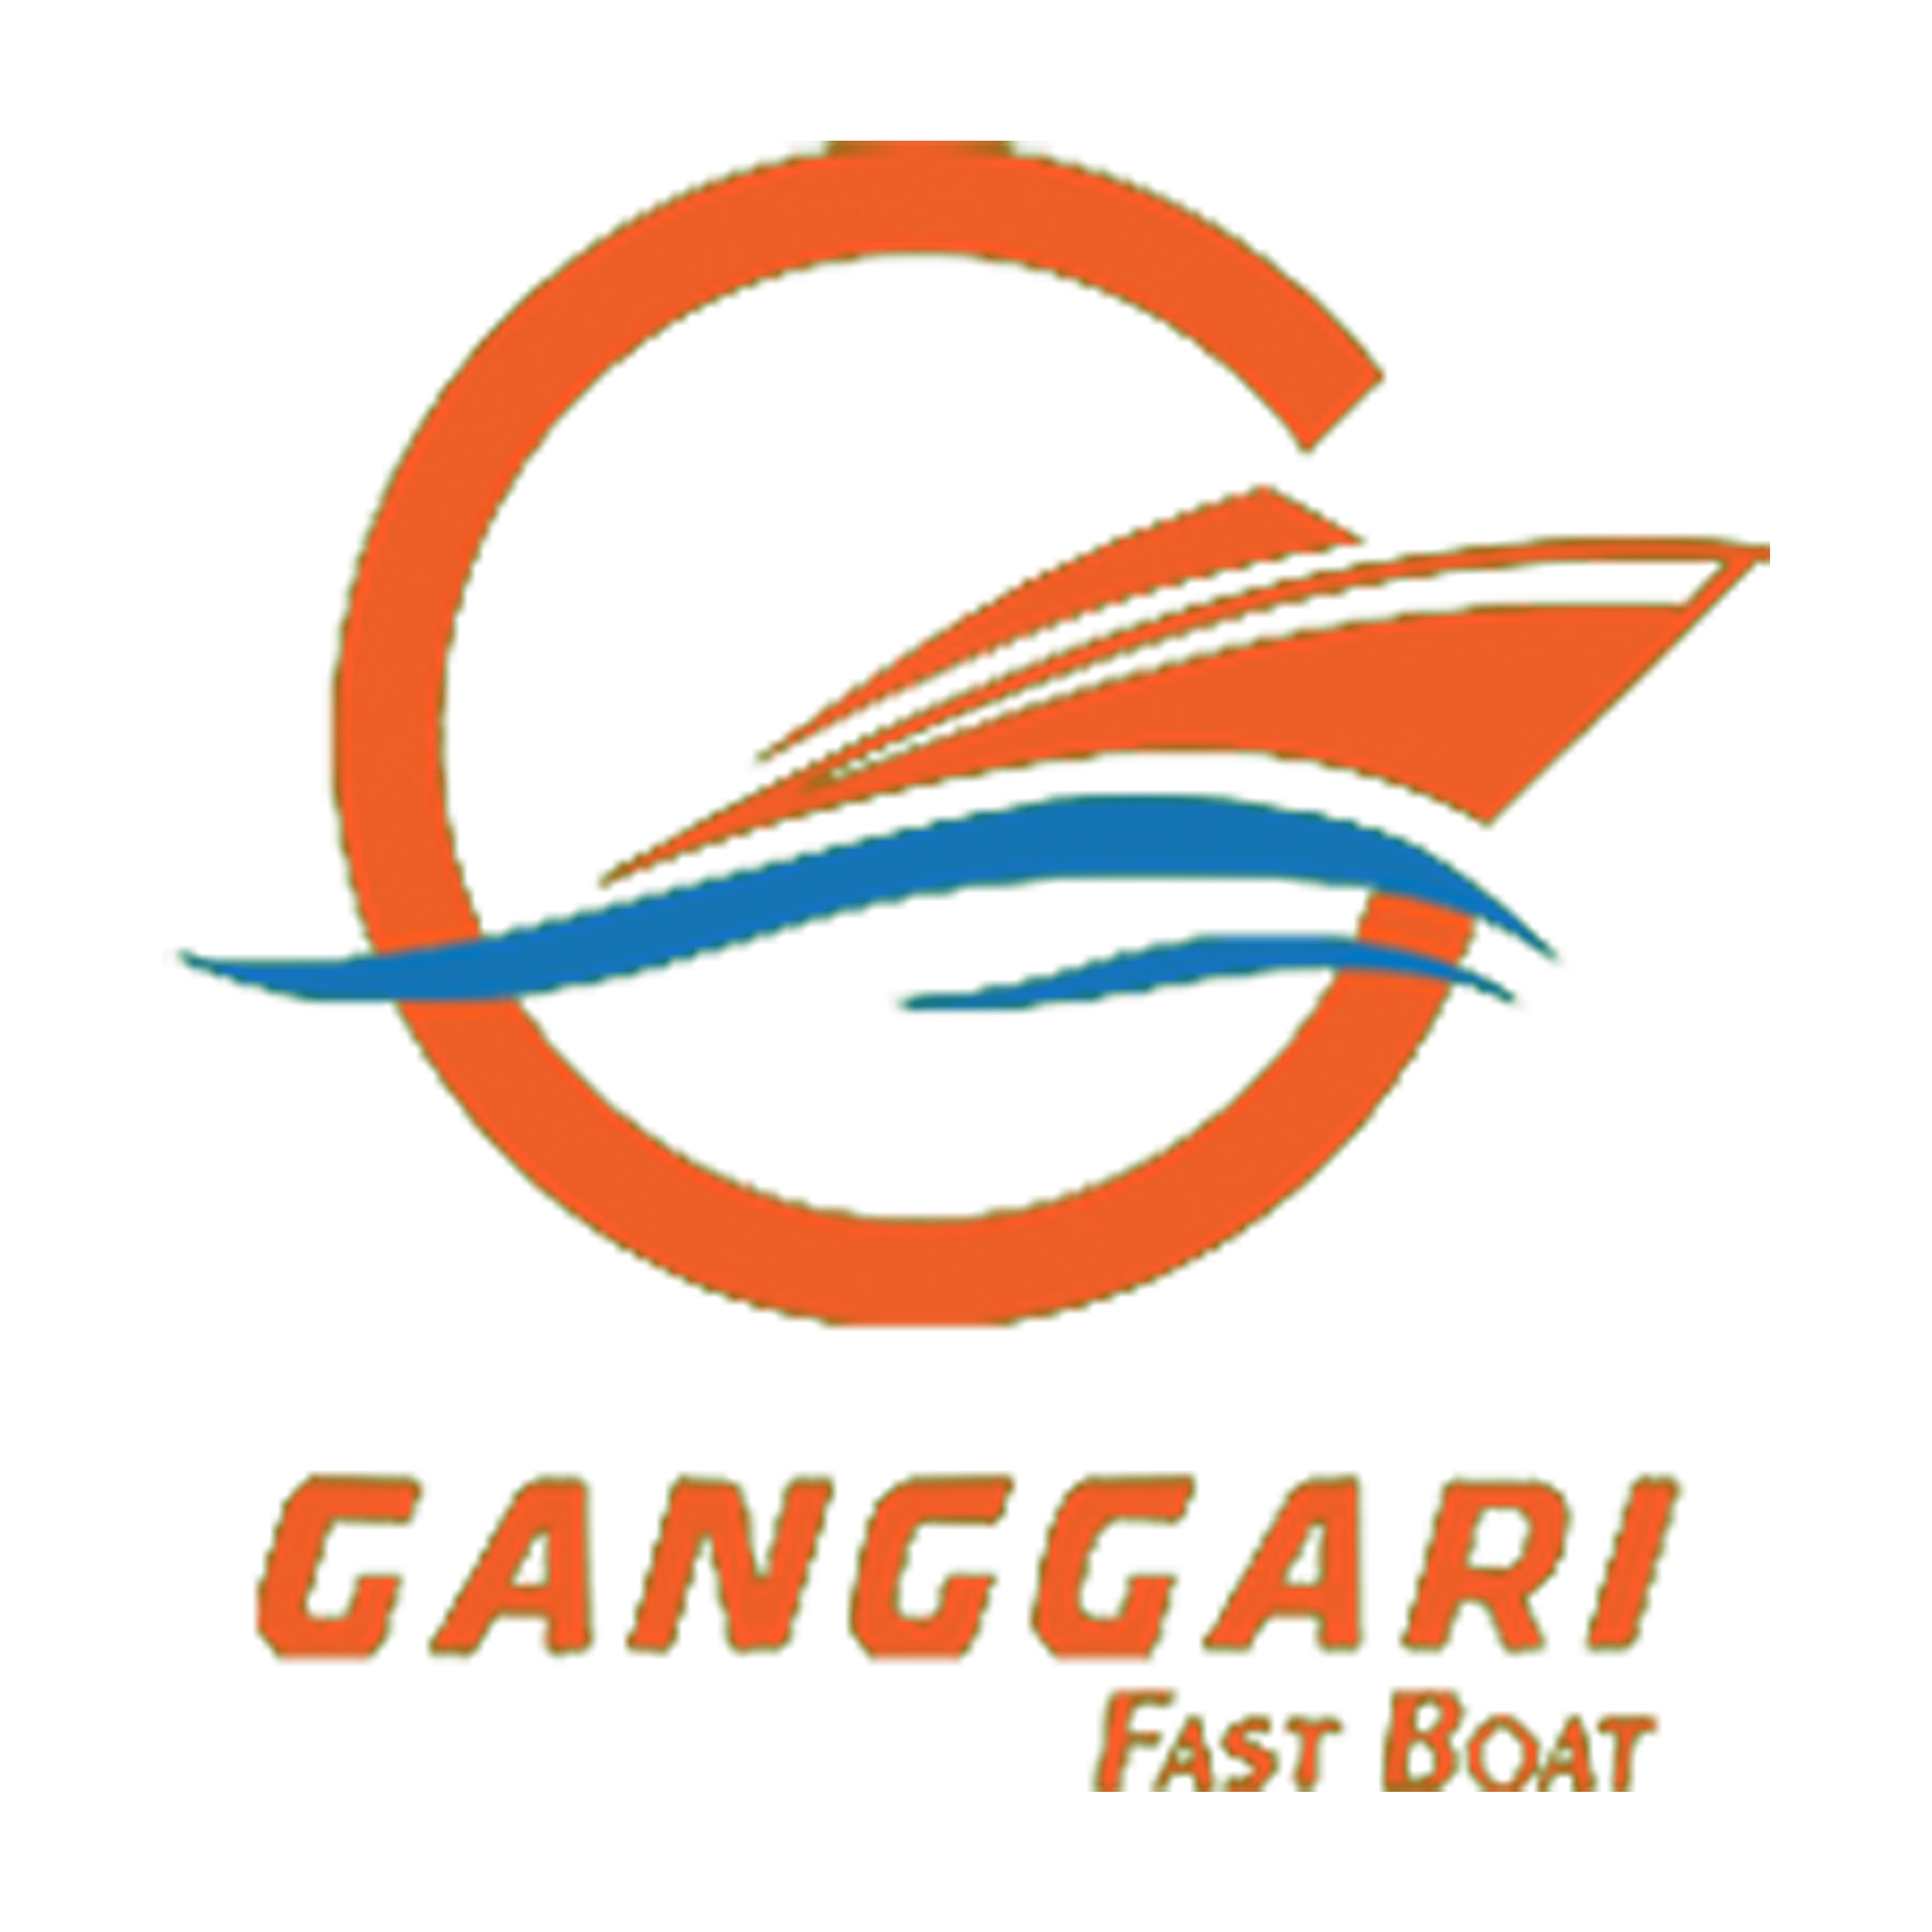 Ganggari Fast Boat to Gili Air  (Gili Air)  